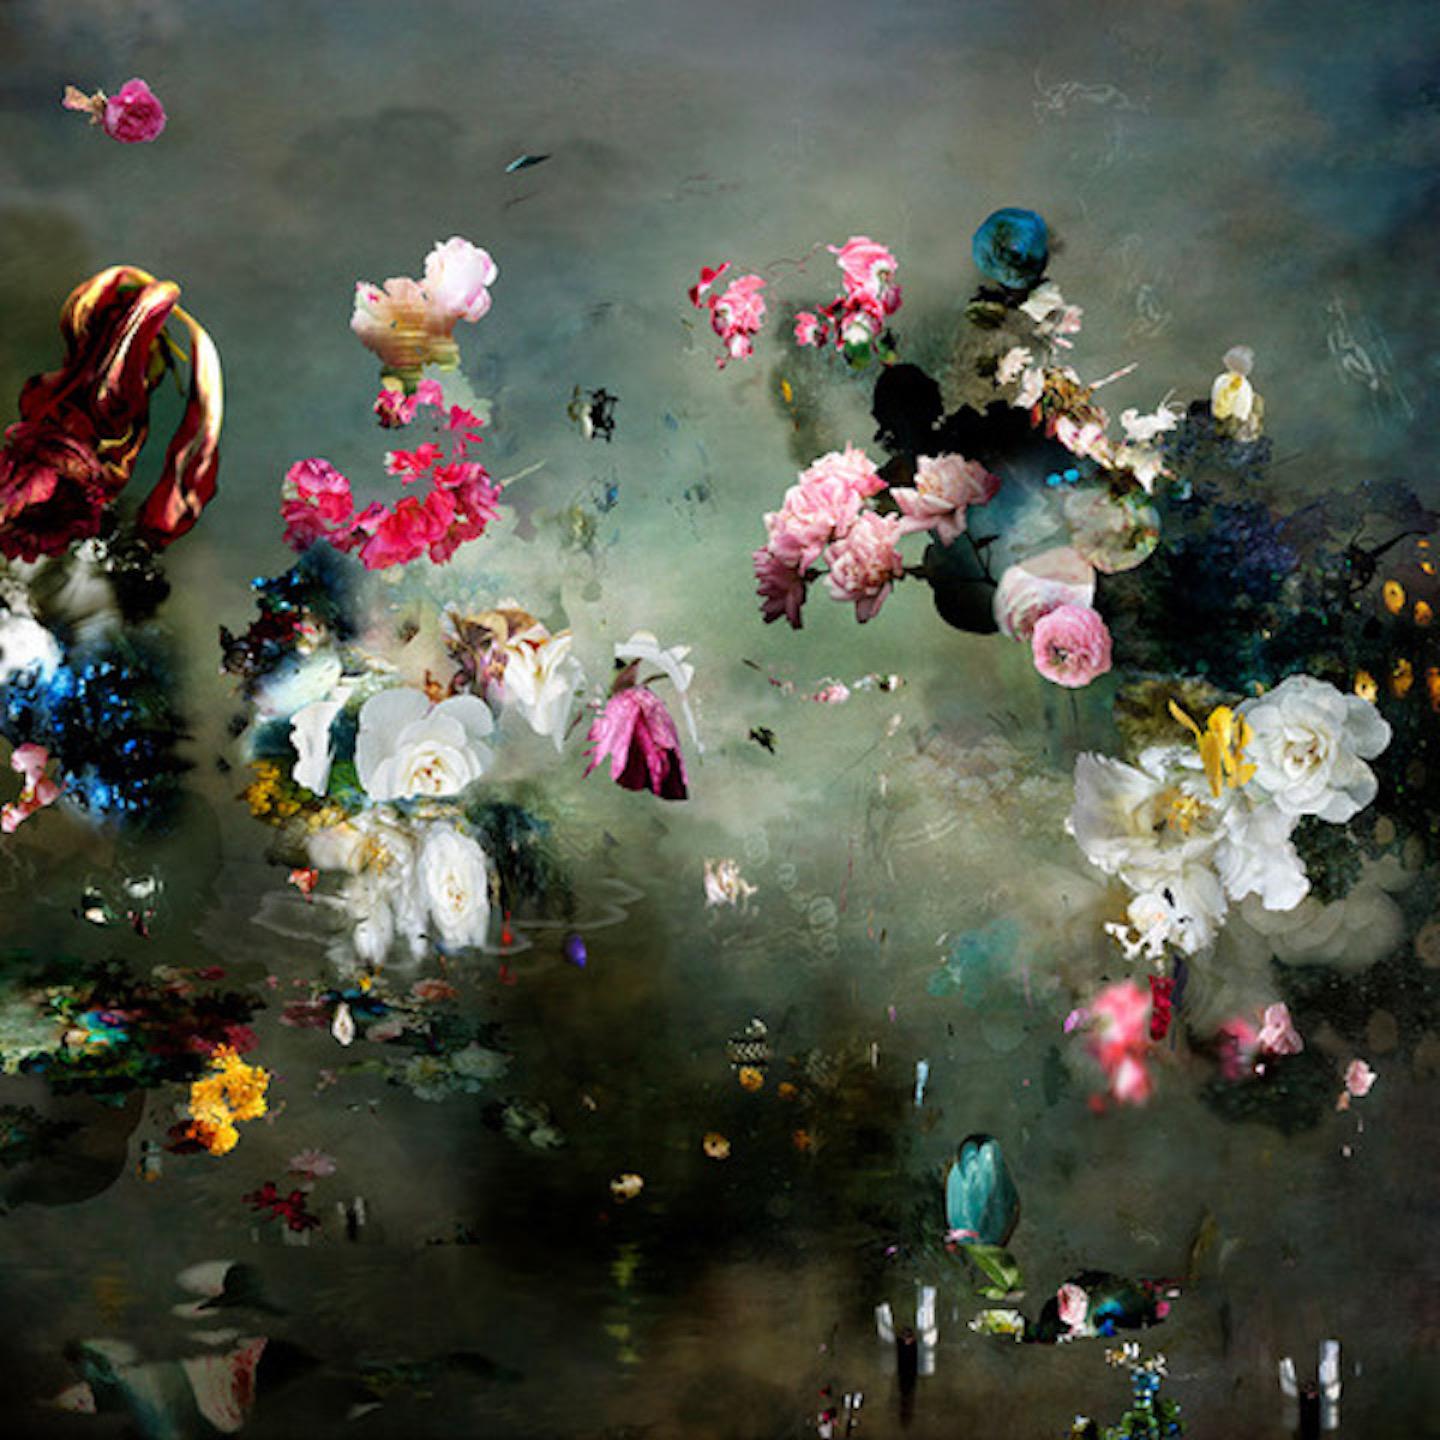 Isabelle Menin Still-Life Photograph – Abstraktes Blumenstillleben von LJ #10, zeitgenössische Landschaftsfotografie